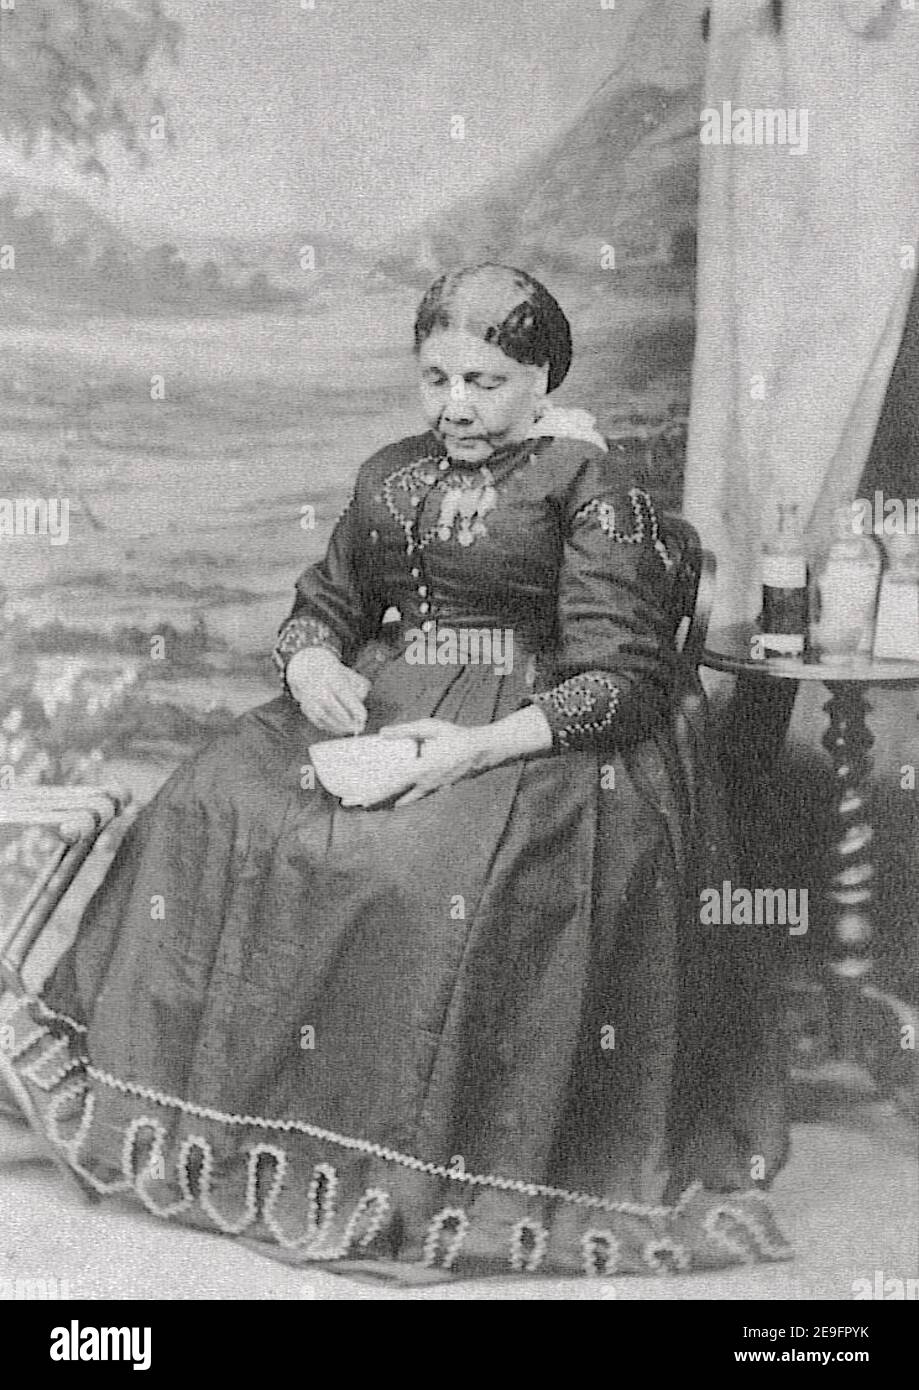 Ritratto d'epoca di Mary Seacole, pioniera dell'infermiera britannica Jamiacan, eroe di molti durante la guerra in Crimea. Foto Stock